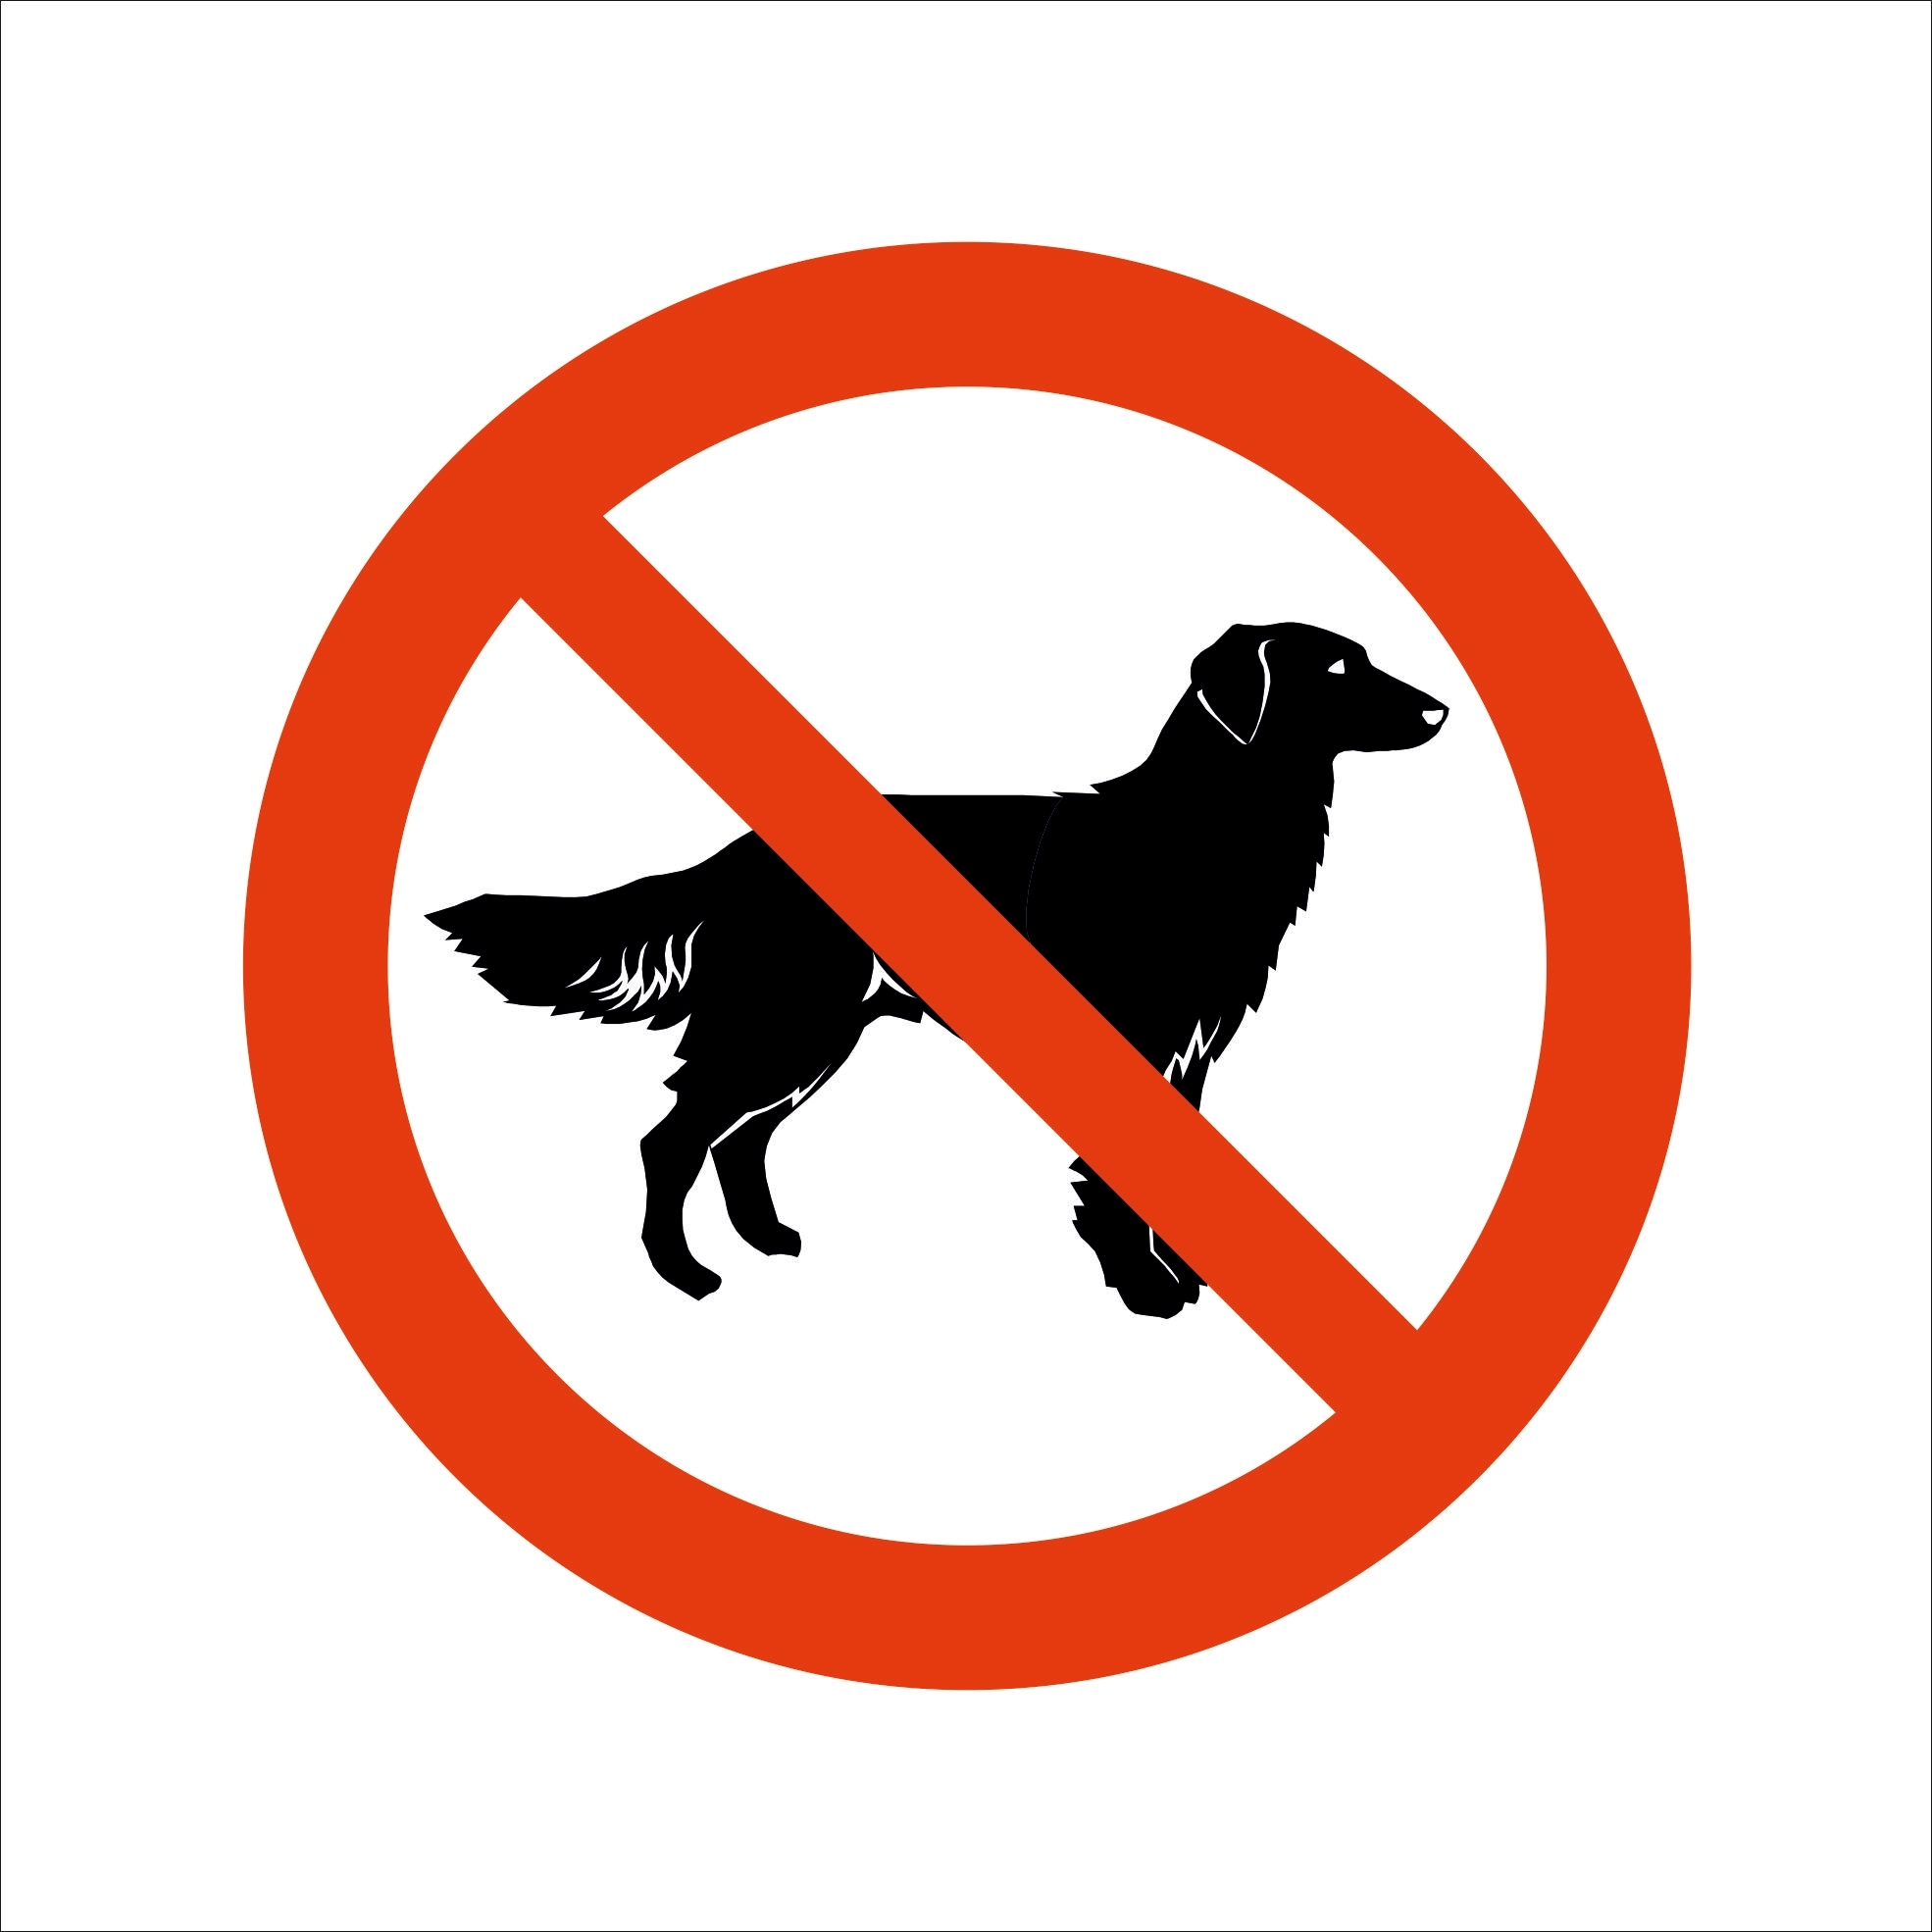 Внимание: самовыгул домашних собак запрещен!